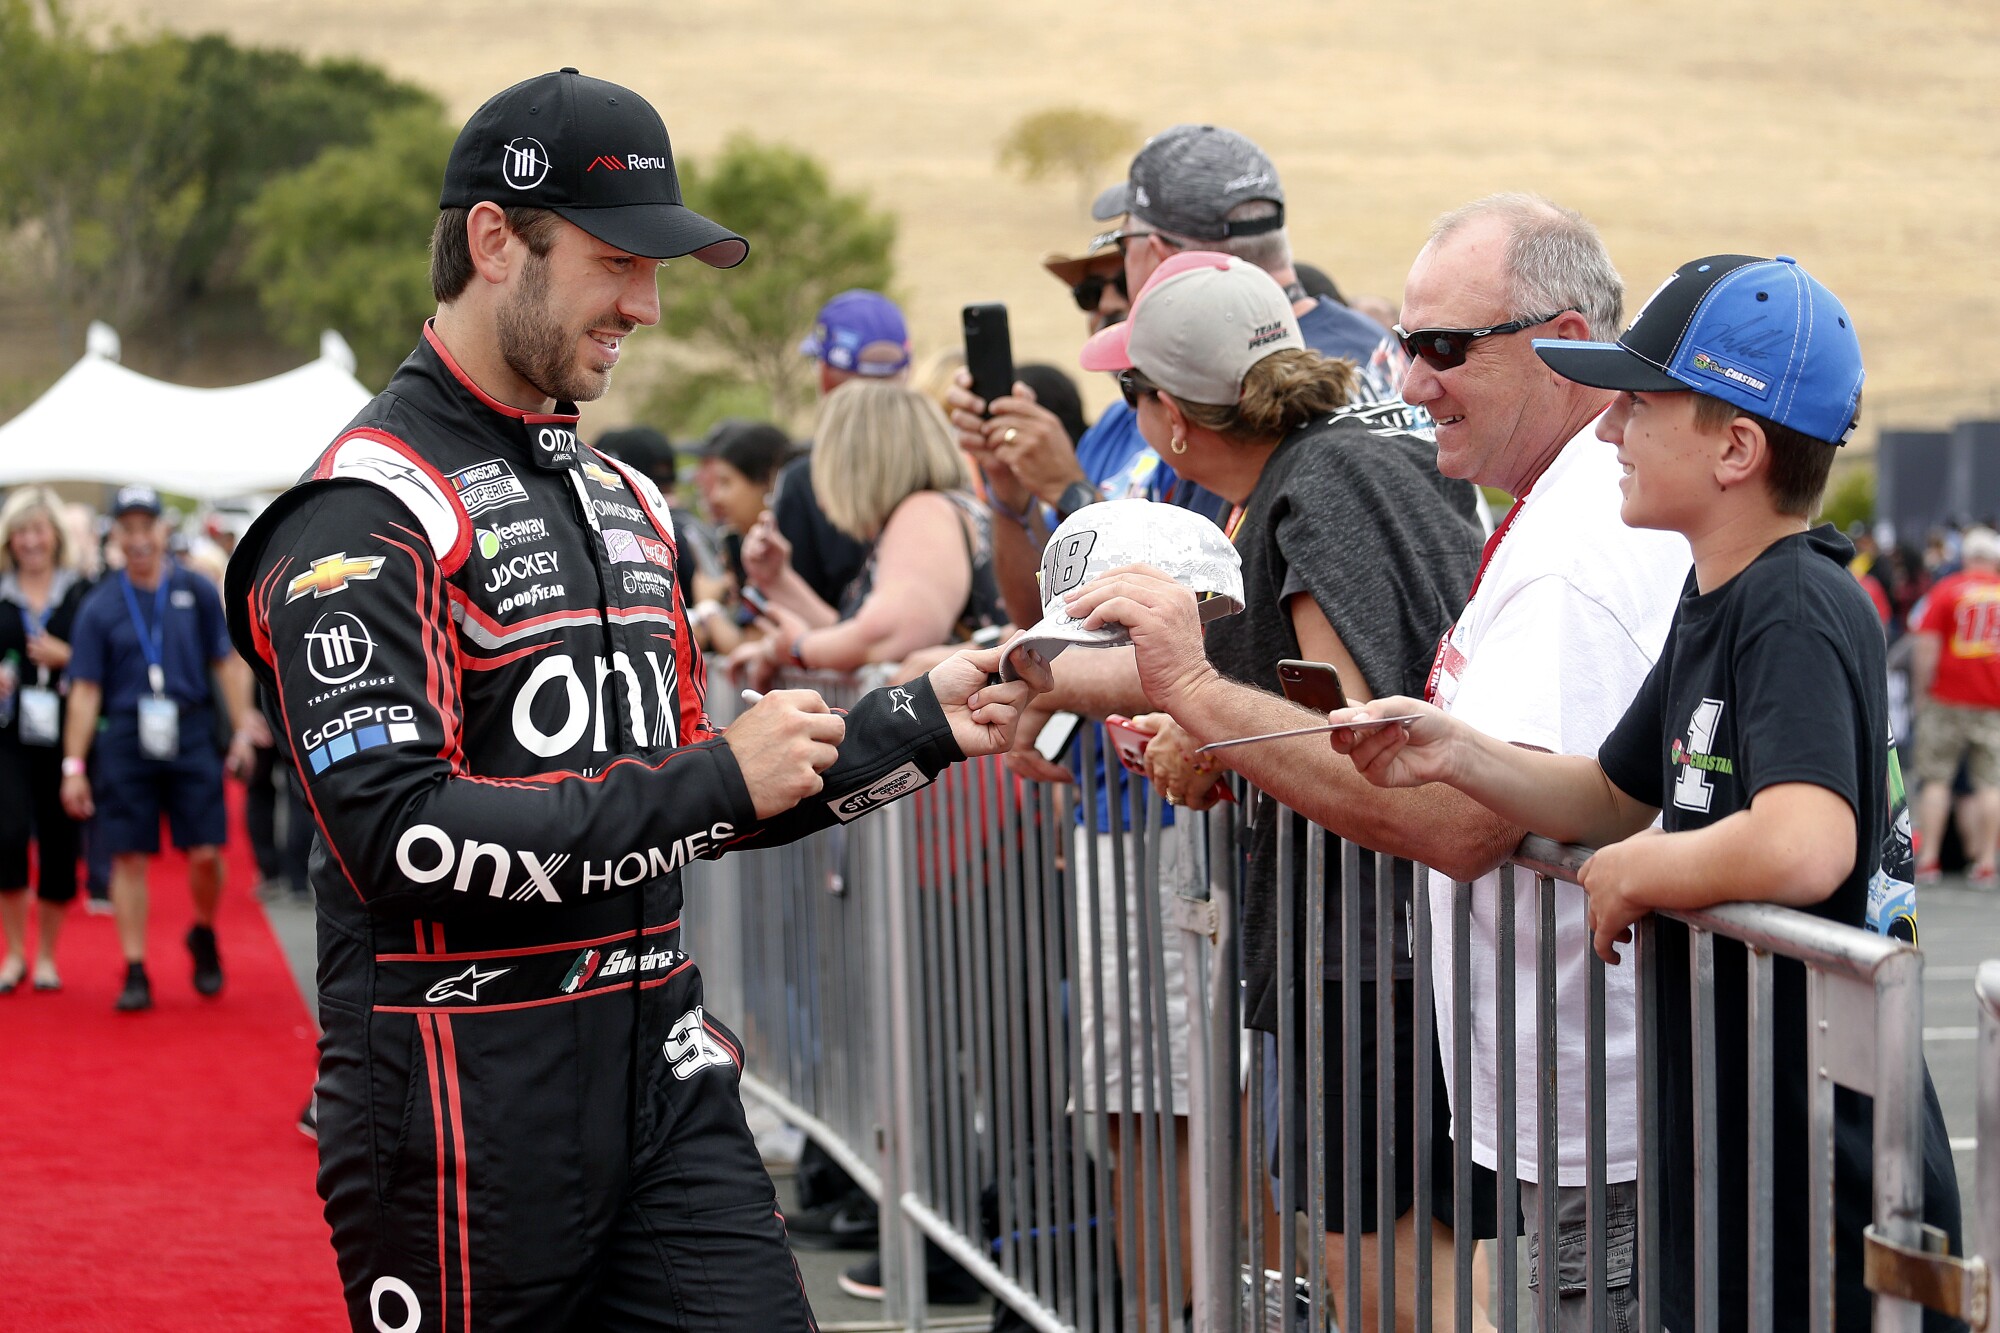 NASCAR driver Daniel Suárez signs autographs for fans at Sonoma Raceway.